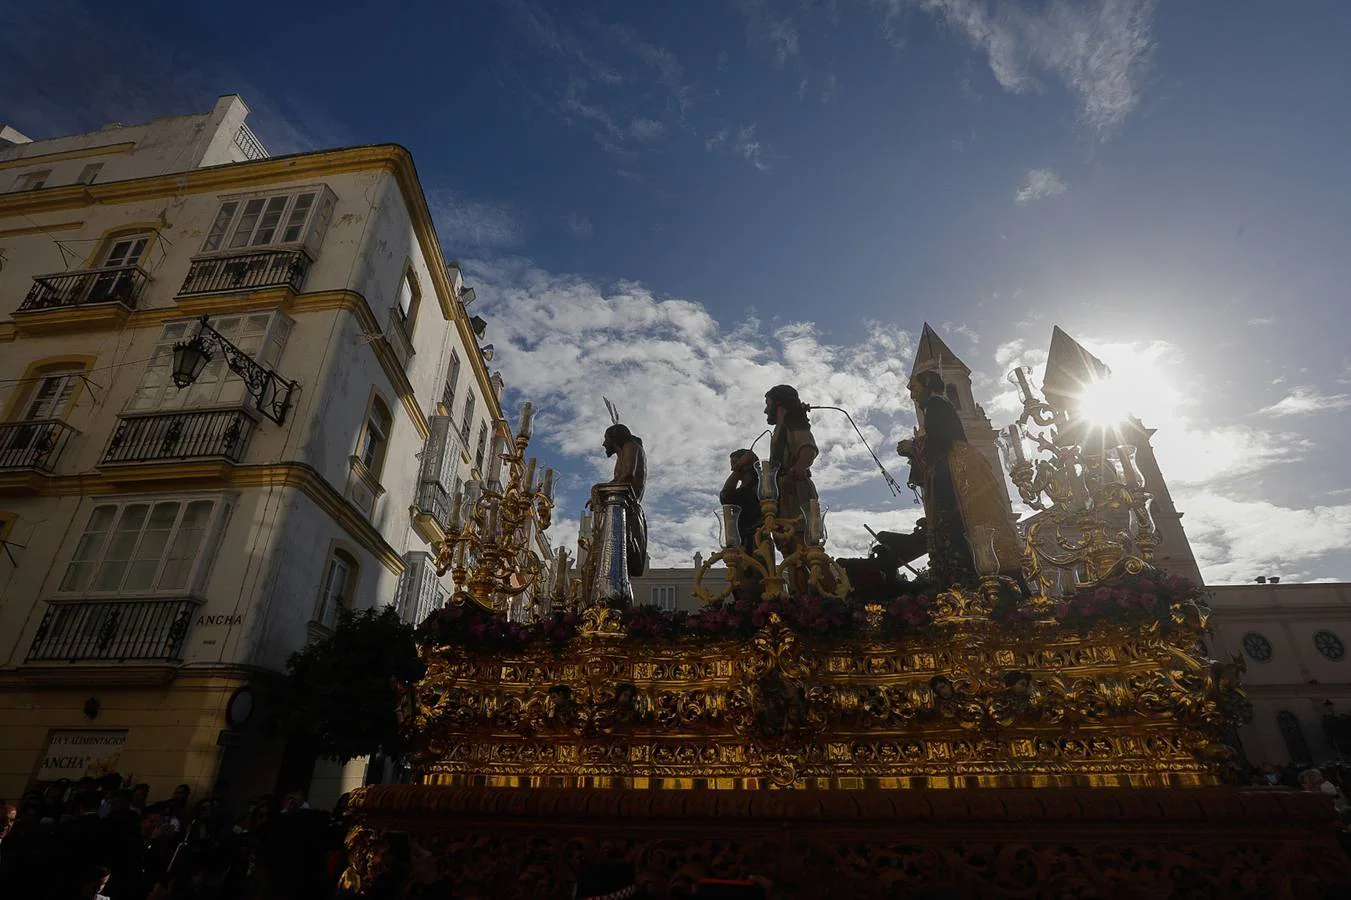 Fotos: Columna, el Martes Santo en Cádiz